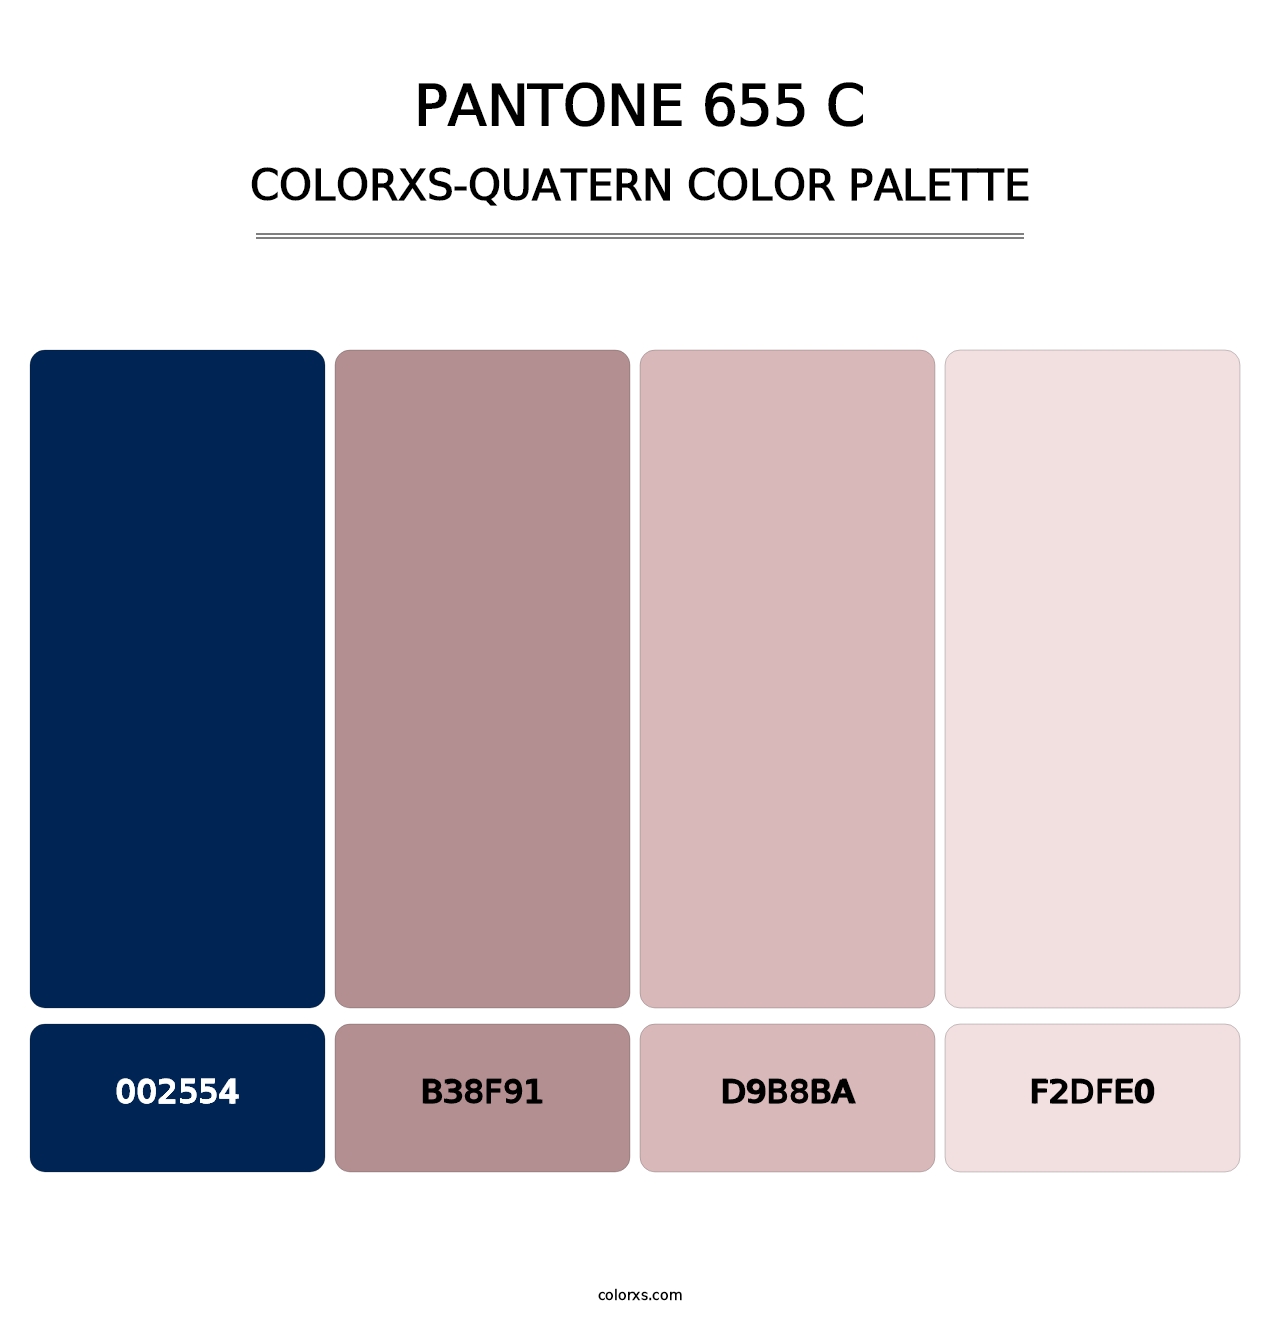 PANTONE 655 C - Colorxs Quatern Palette